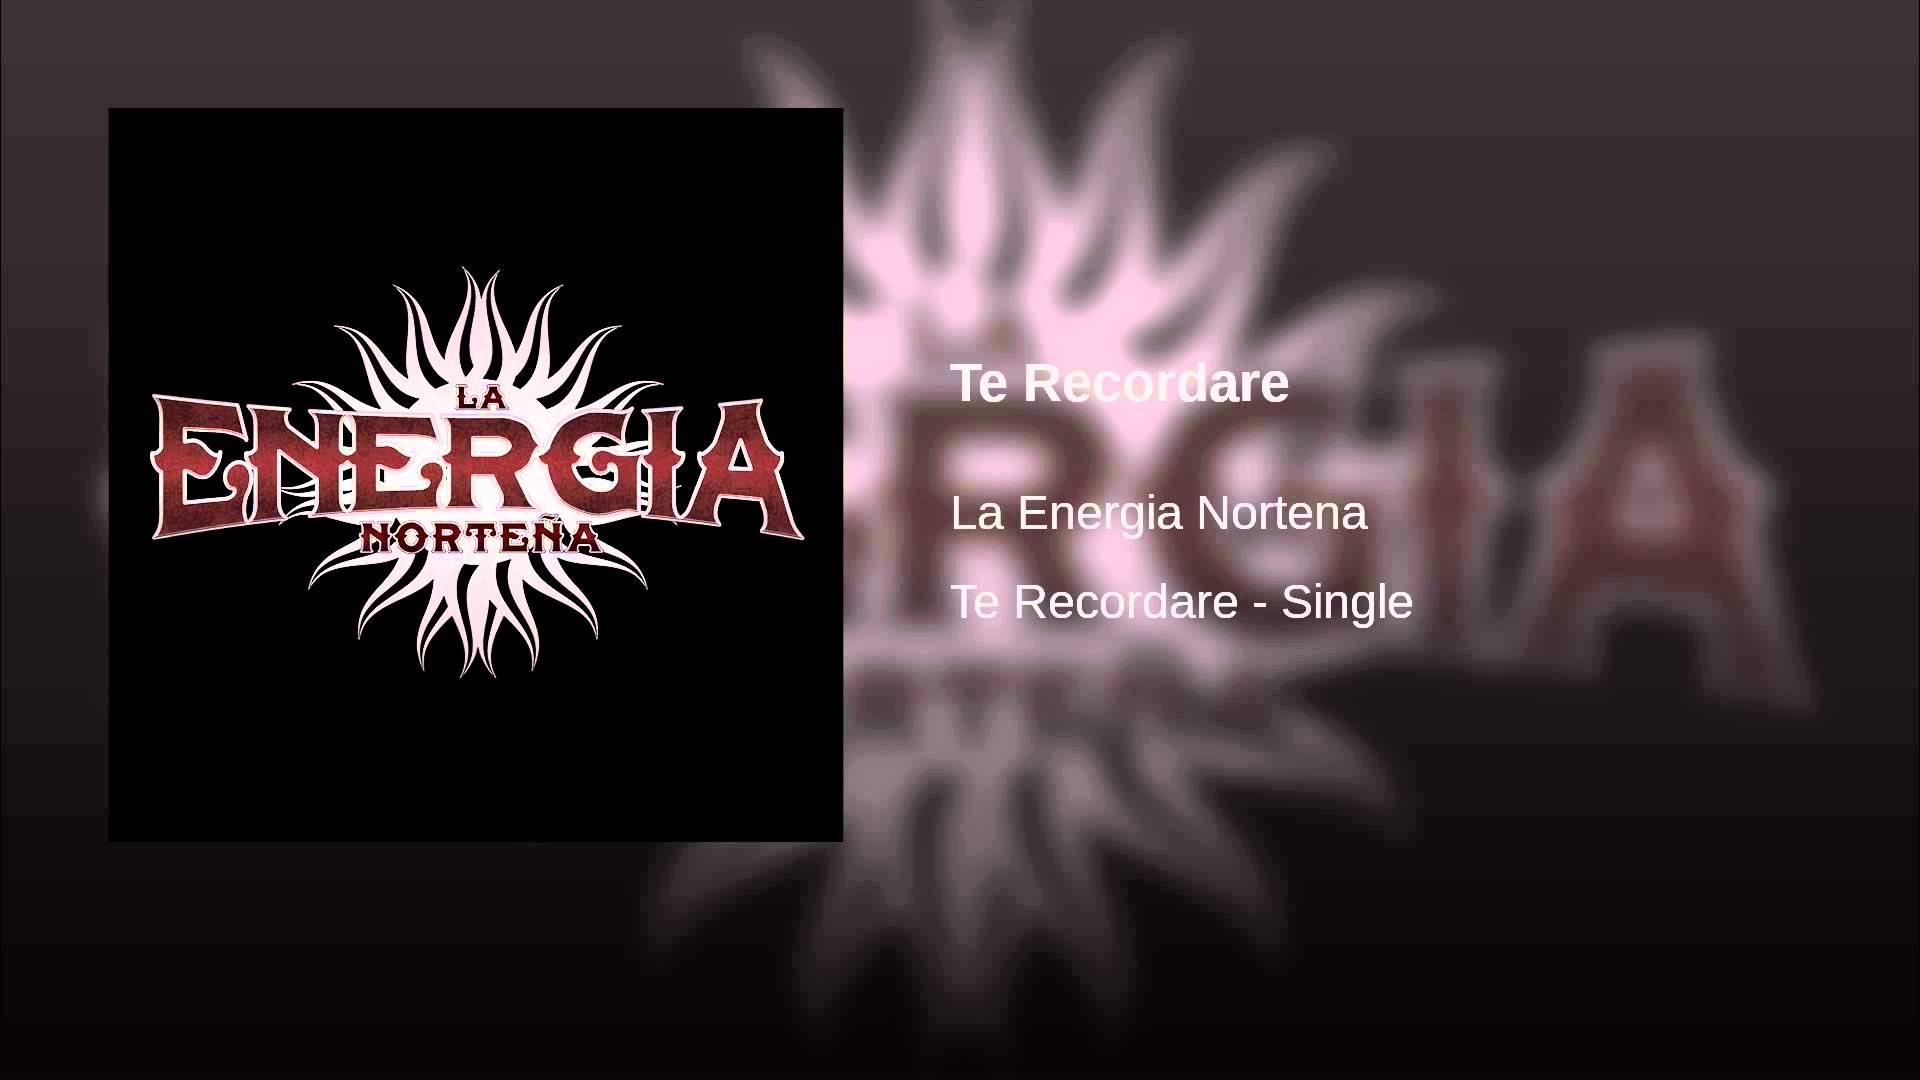 La Energia Nortena Te Recordare Movies Music Poster